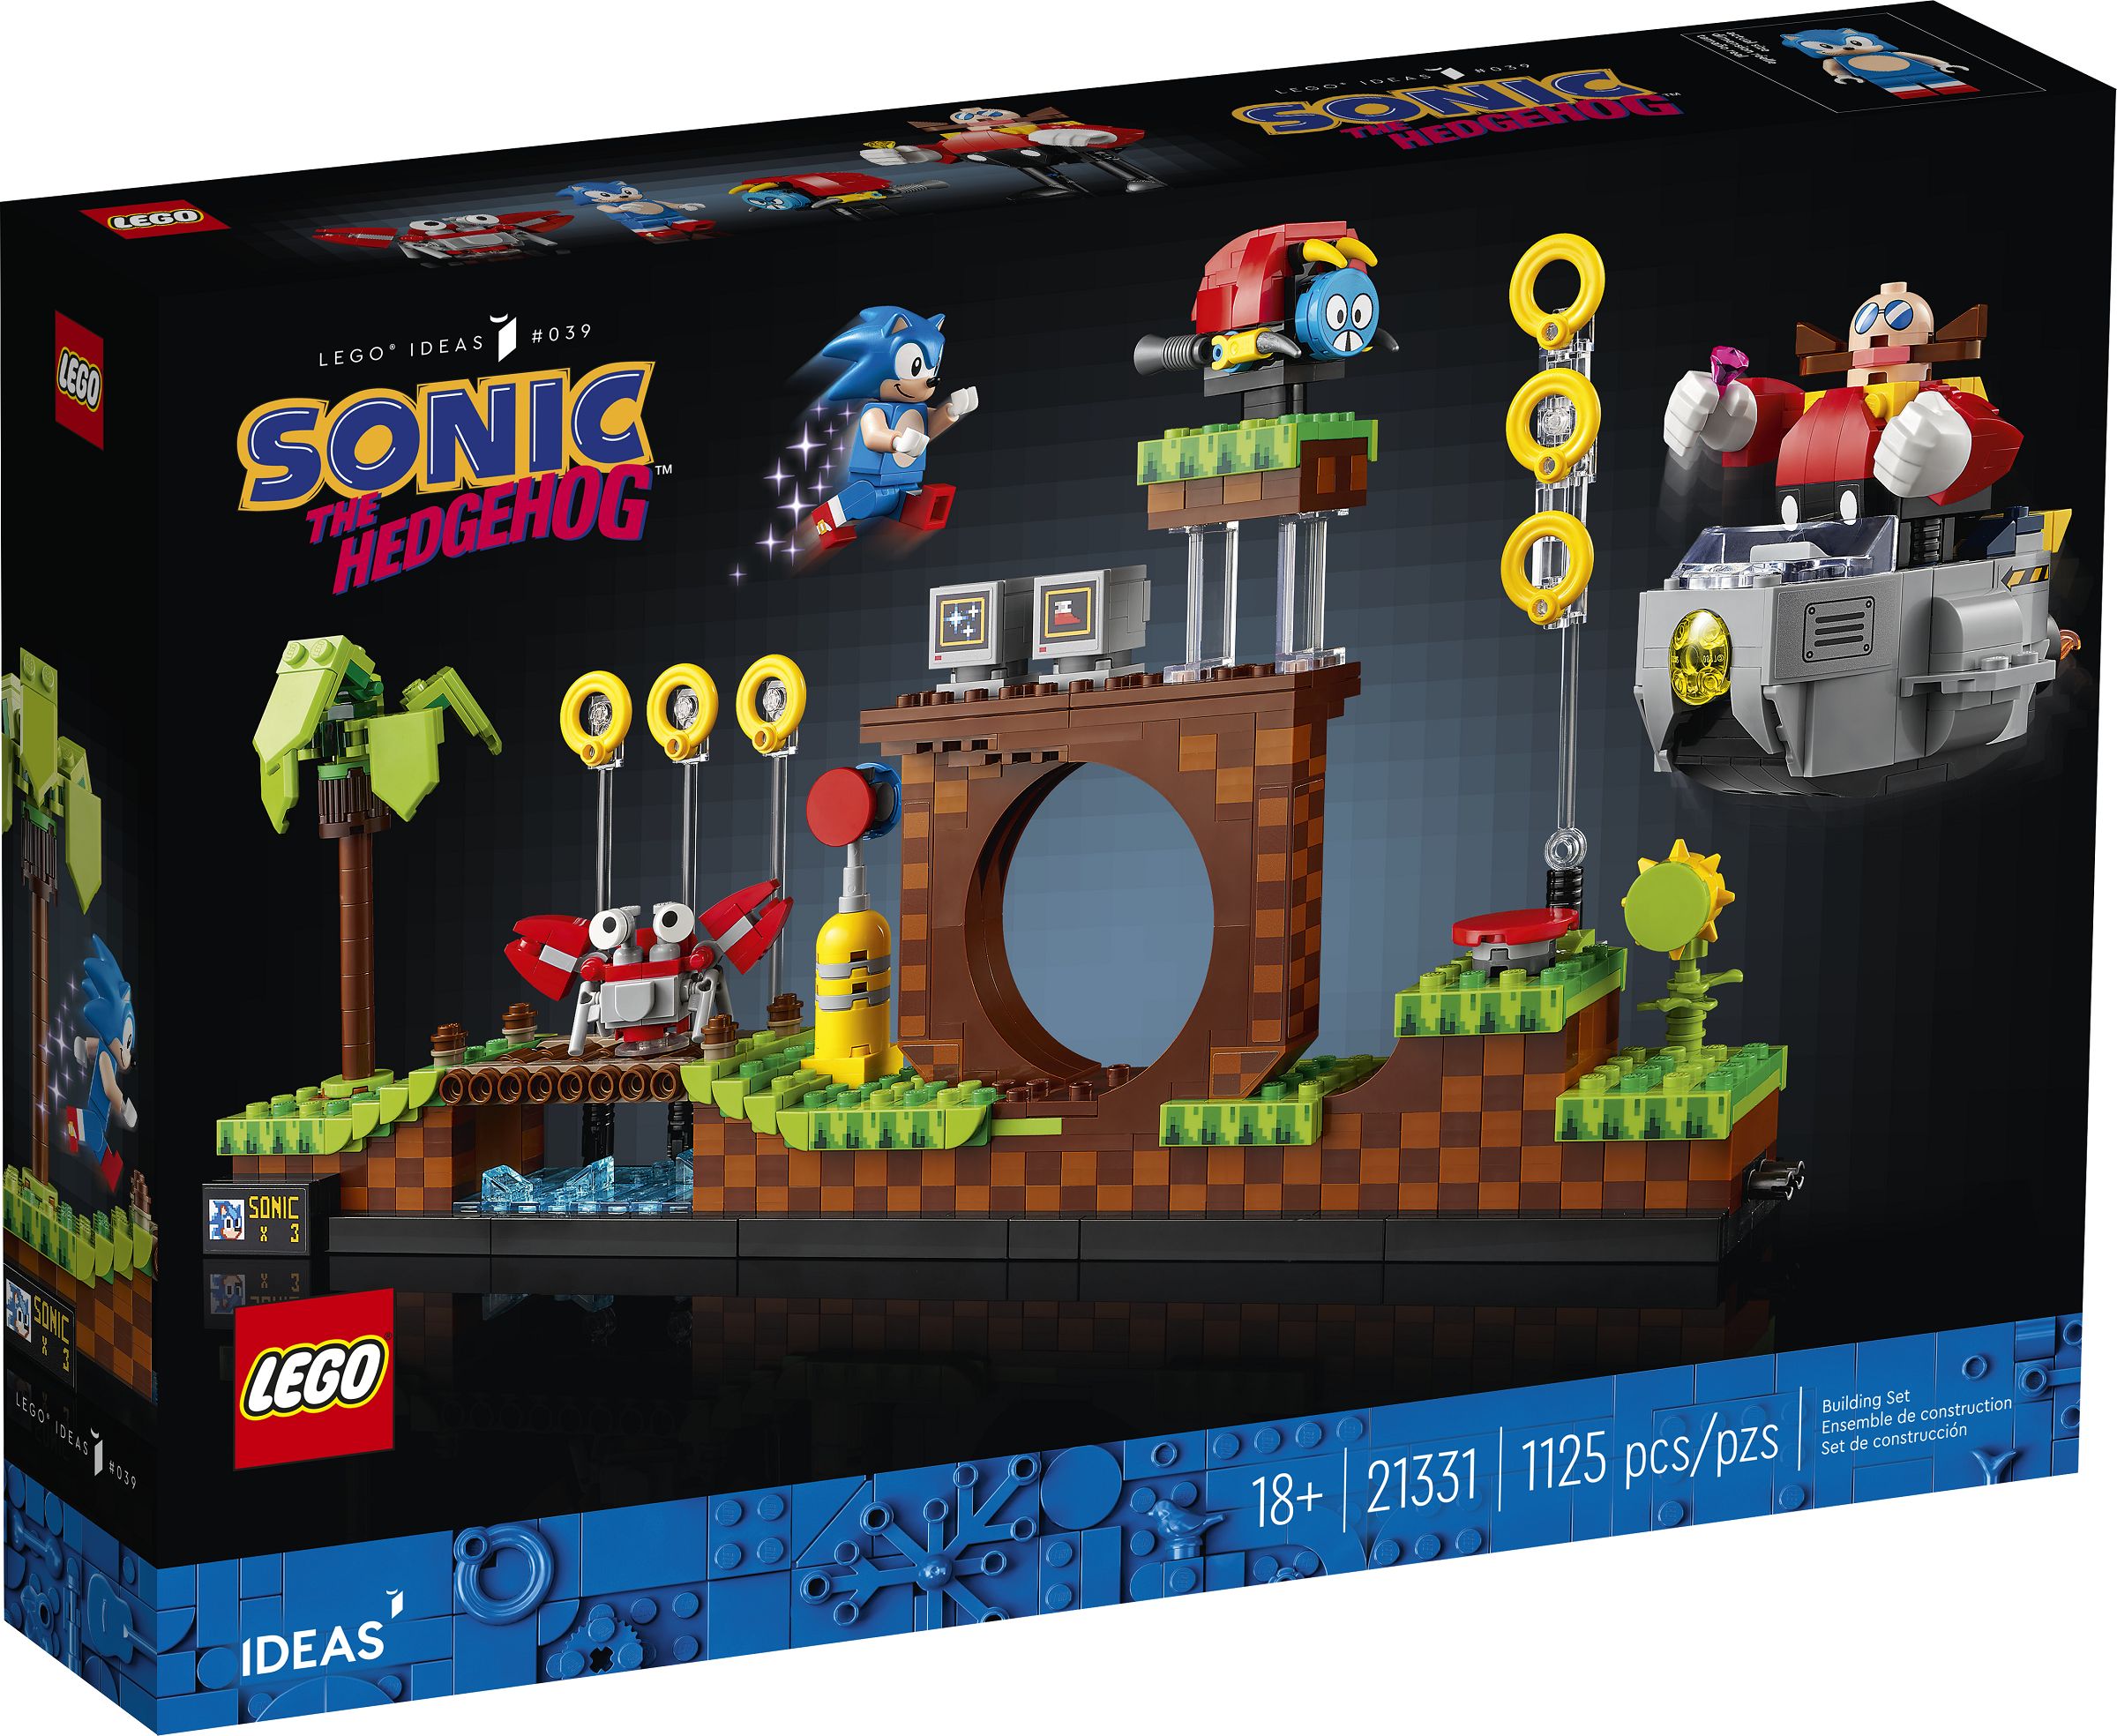 LEGO Ideas 21331 Sonic the Hedgehog™ – Green Hill Zone LEGO_21331_alt1.jpg